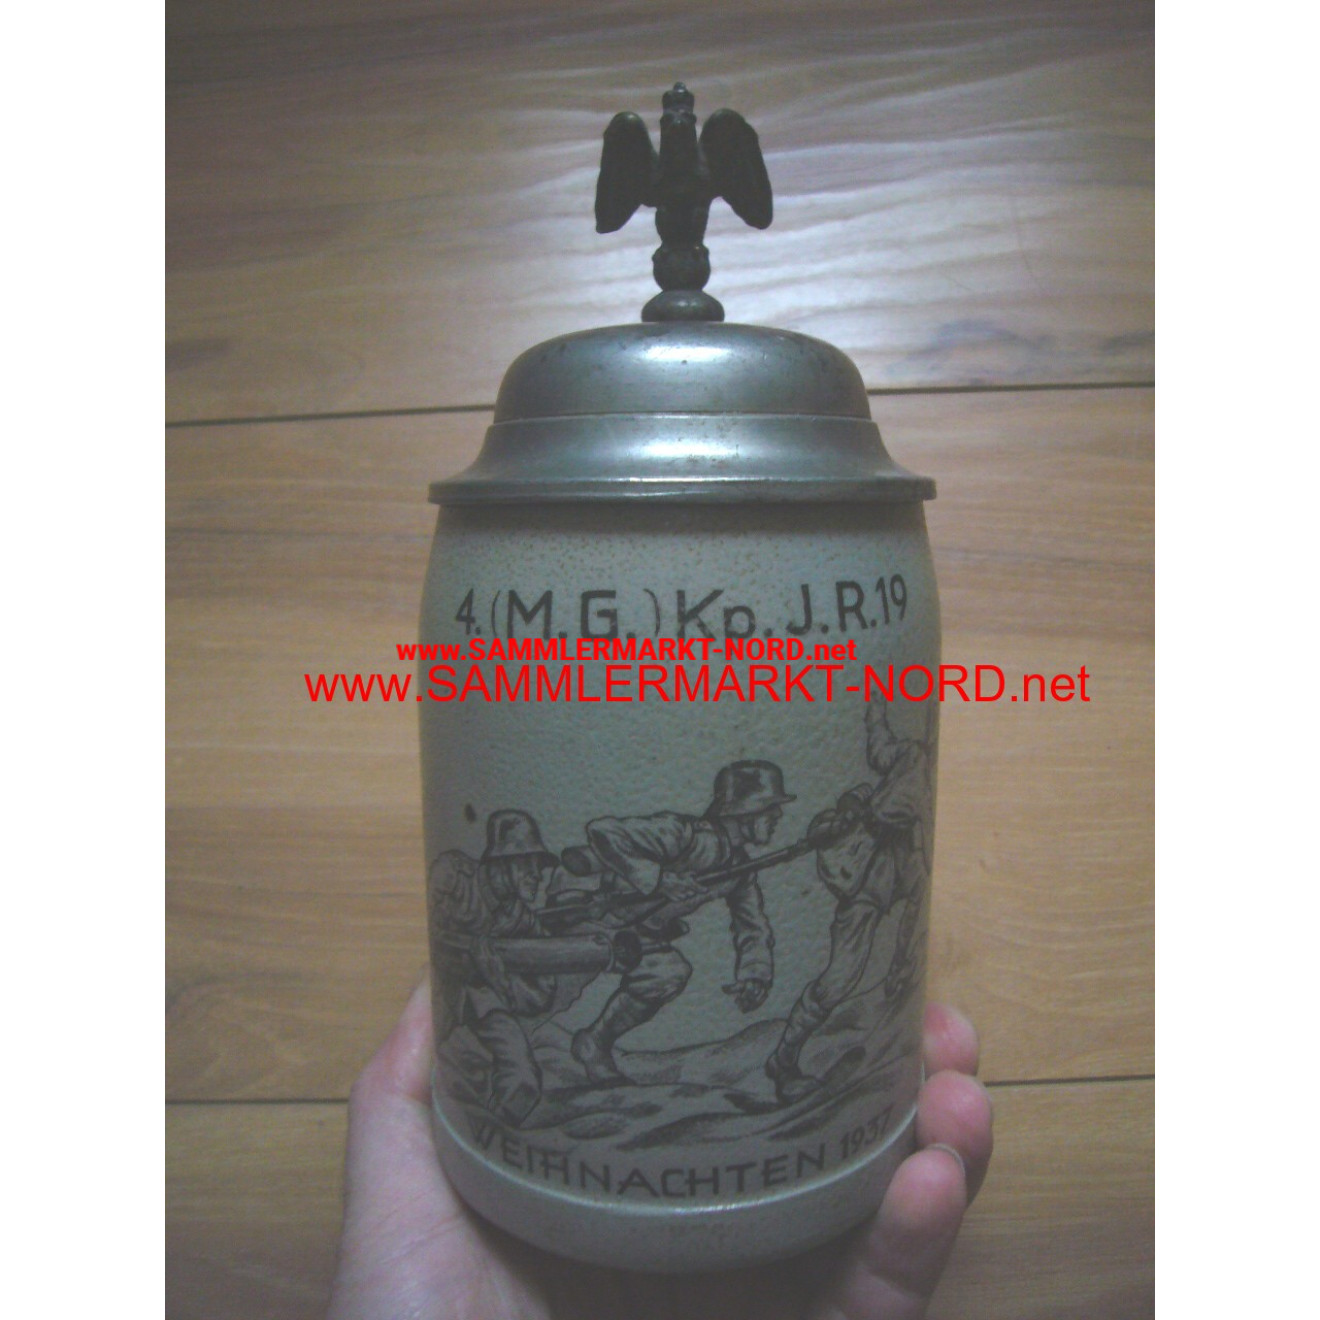 Beer mug christmas 1937 - 4. (M.G.) Kp. Infantry Regiment 19